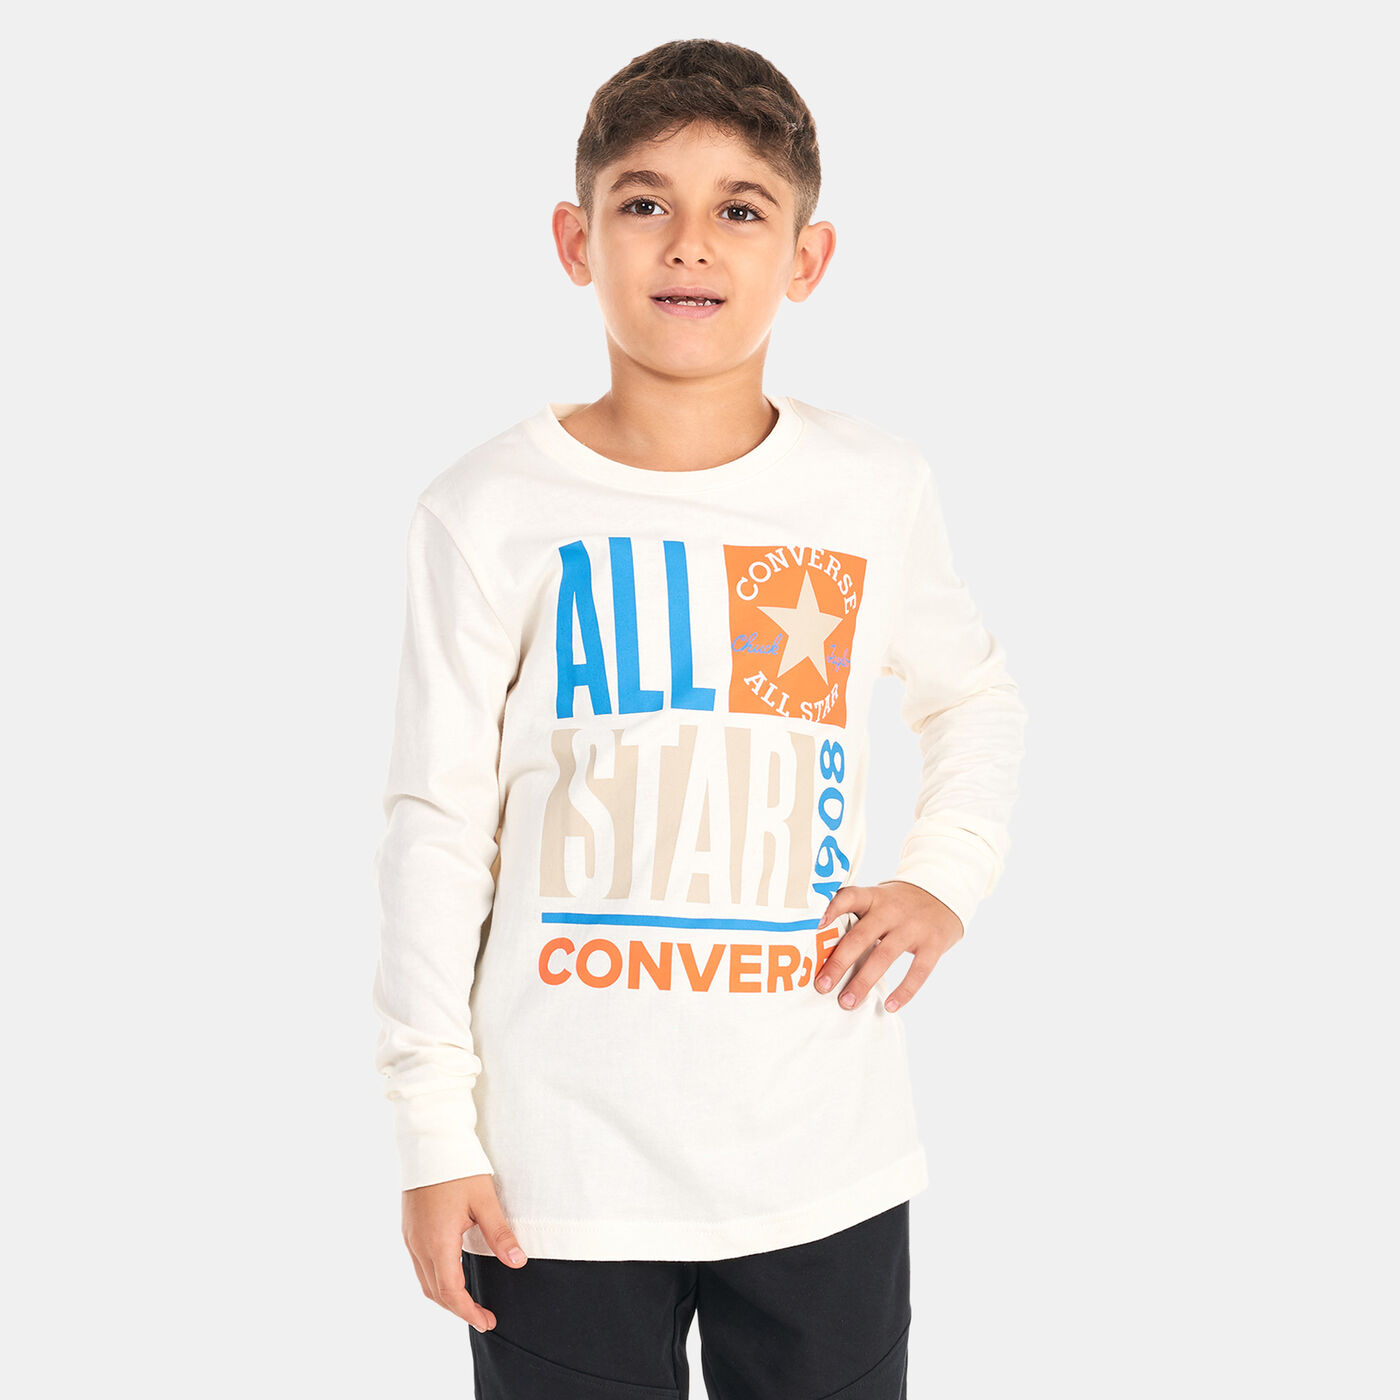 Kids' All Star T-Shirt